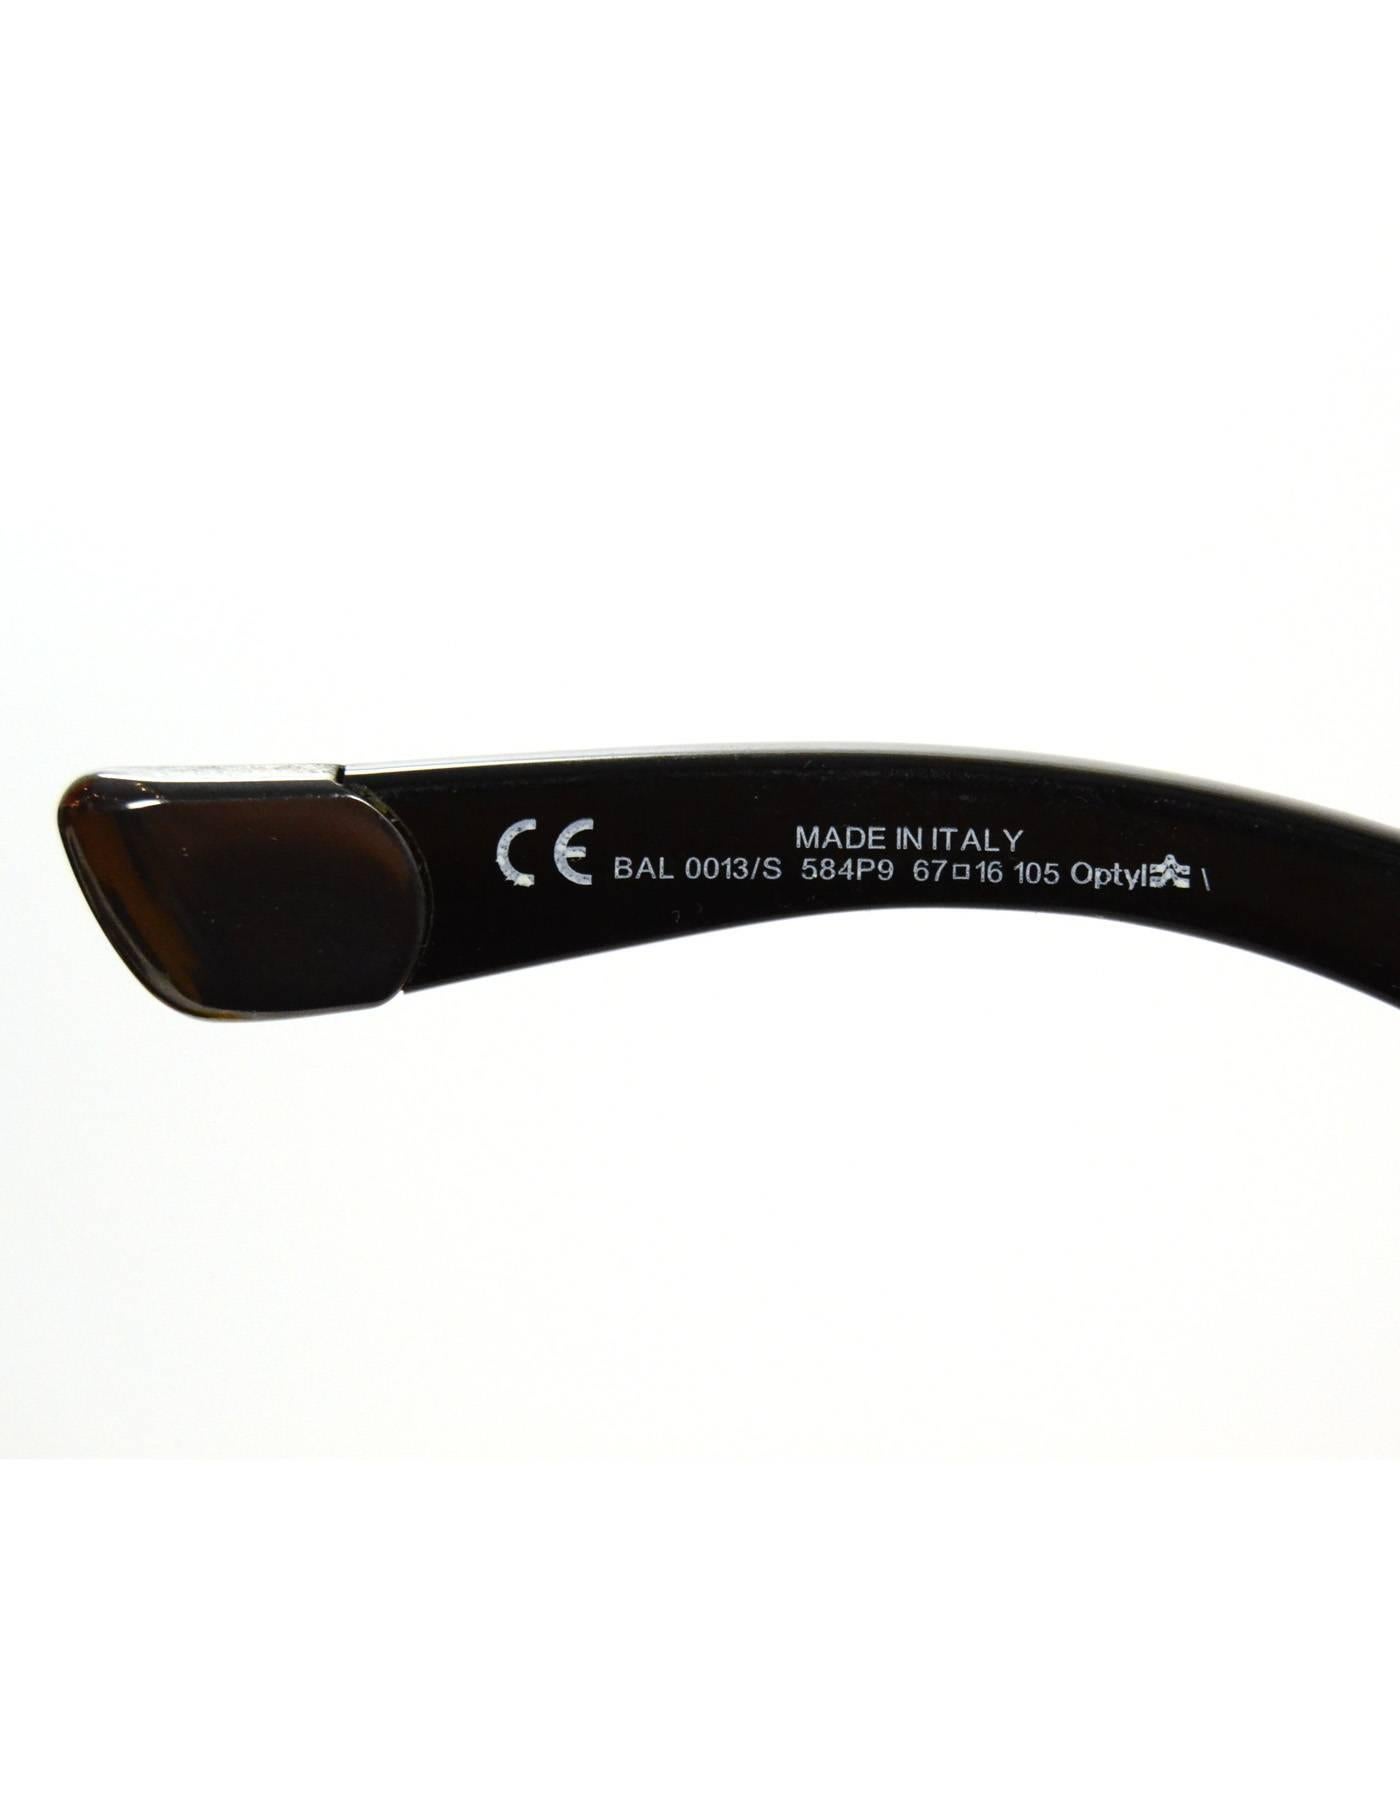 Balenciaga Black and Silvertone Sunglasses with Case 1